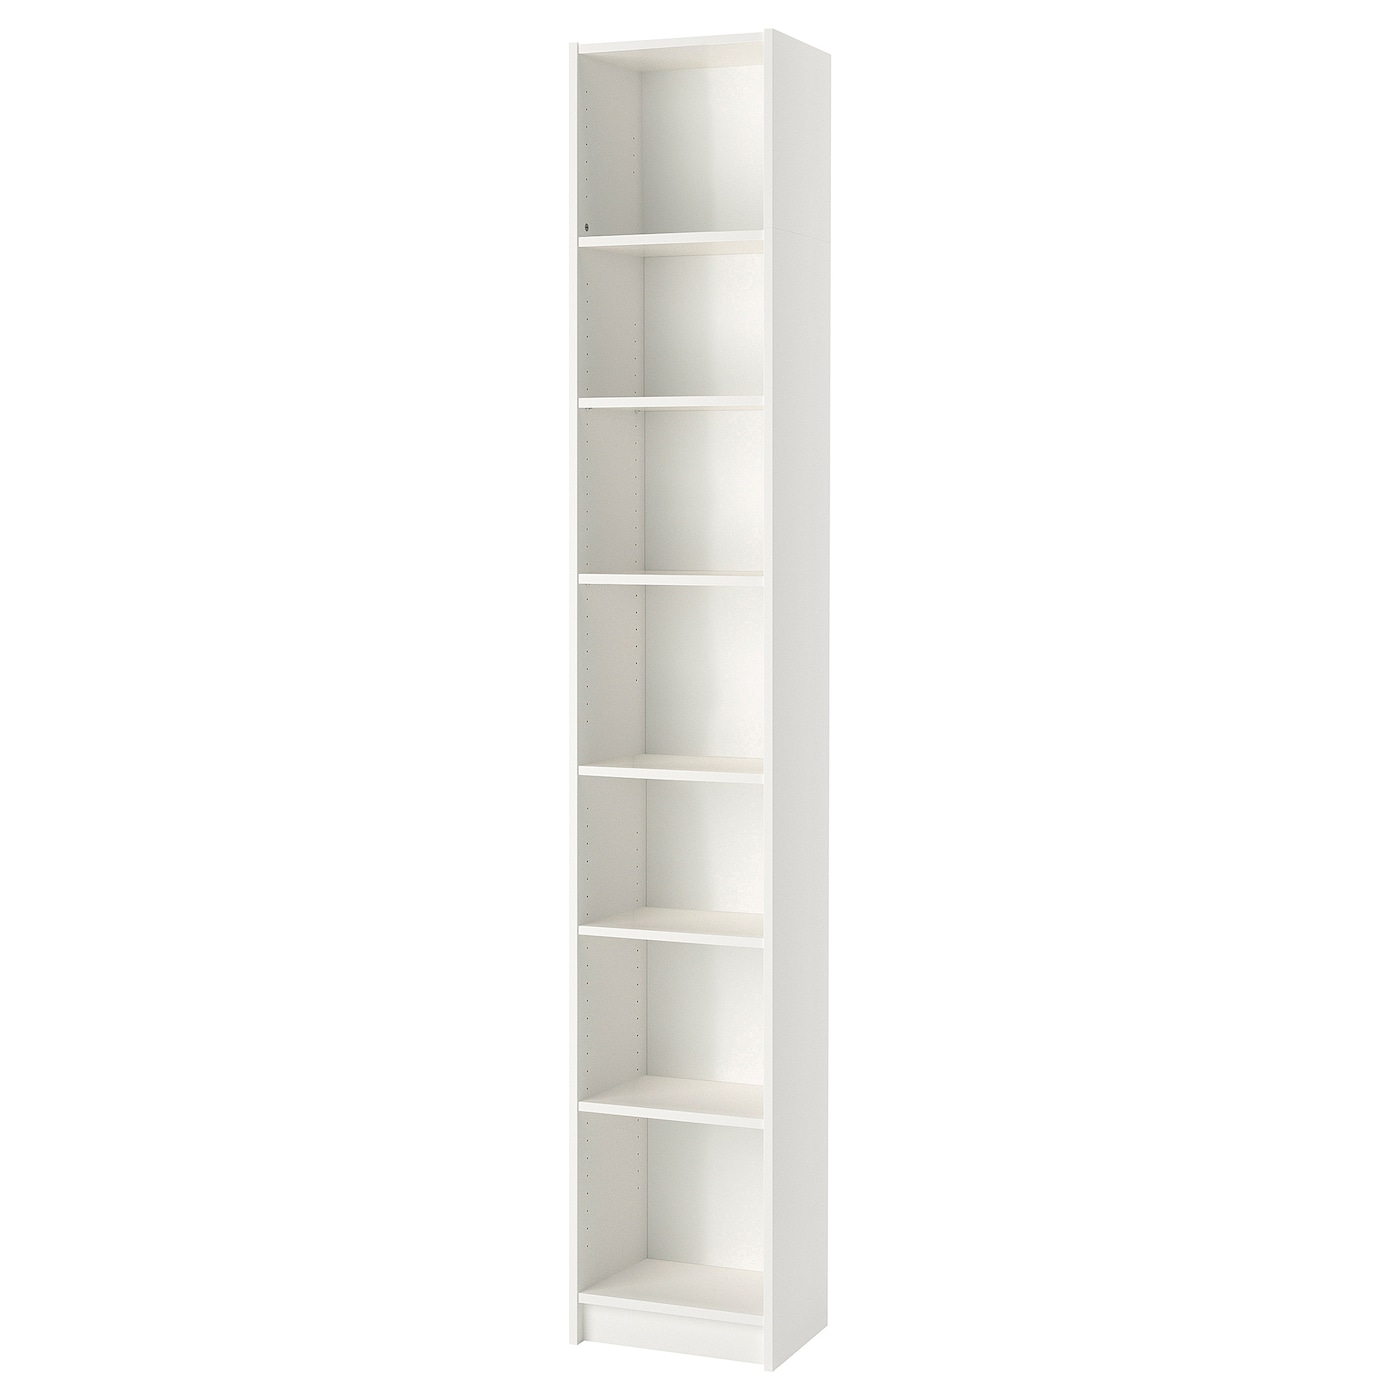 Стеллаж - IKEA BILLY, 40х40х237 см, белый, БИЛЛИ ИКЕА